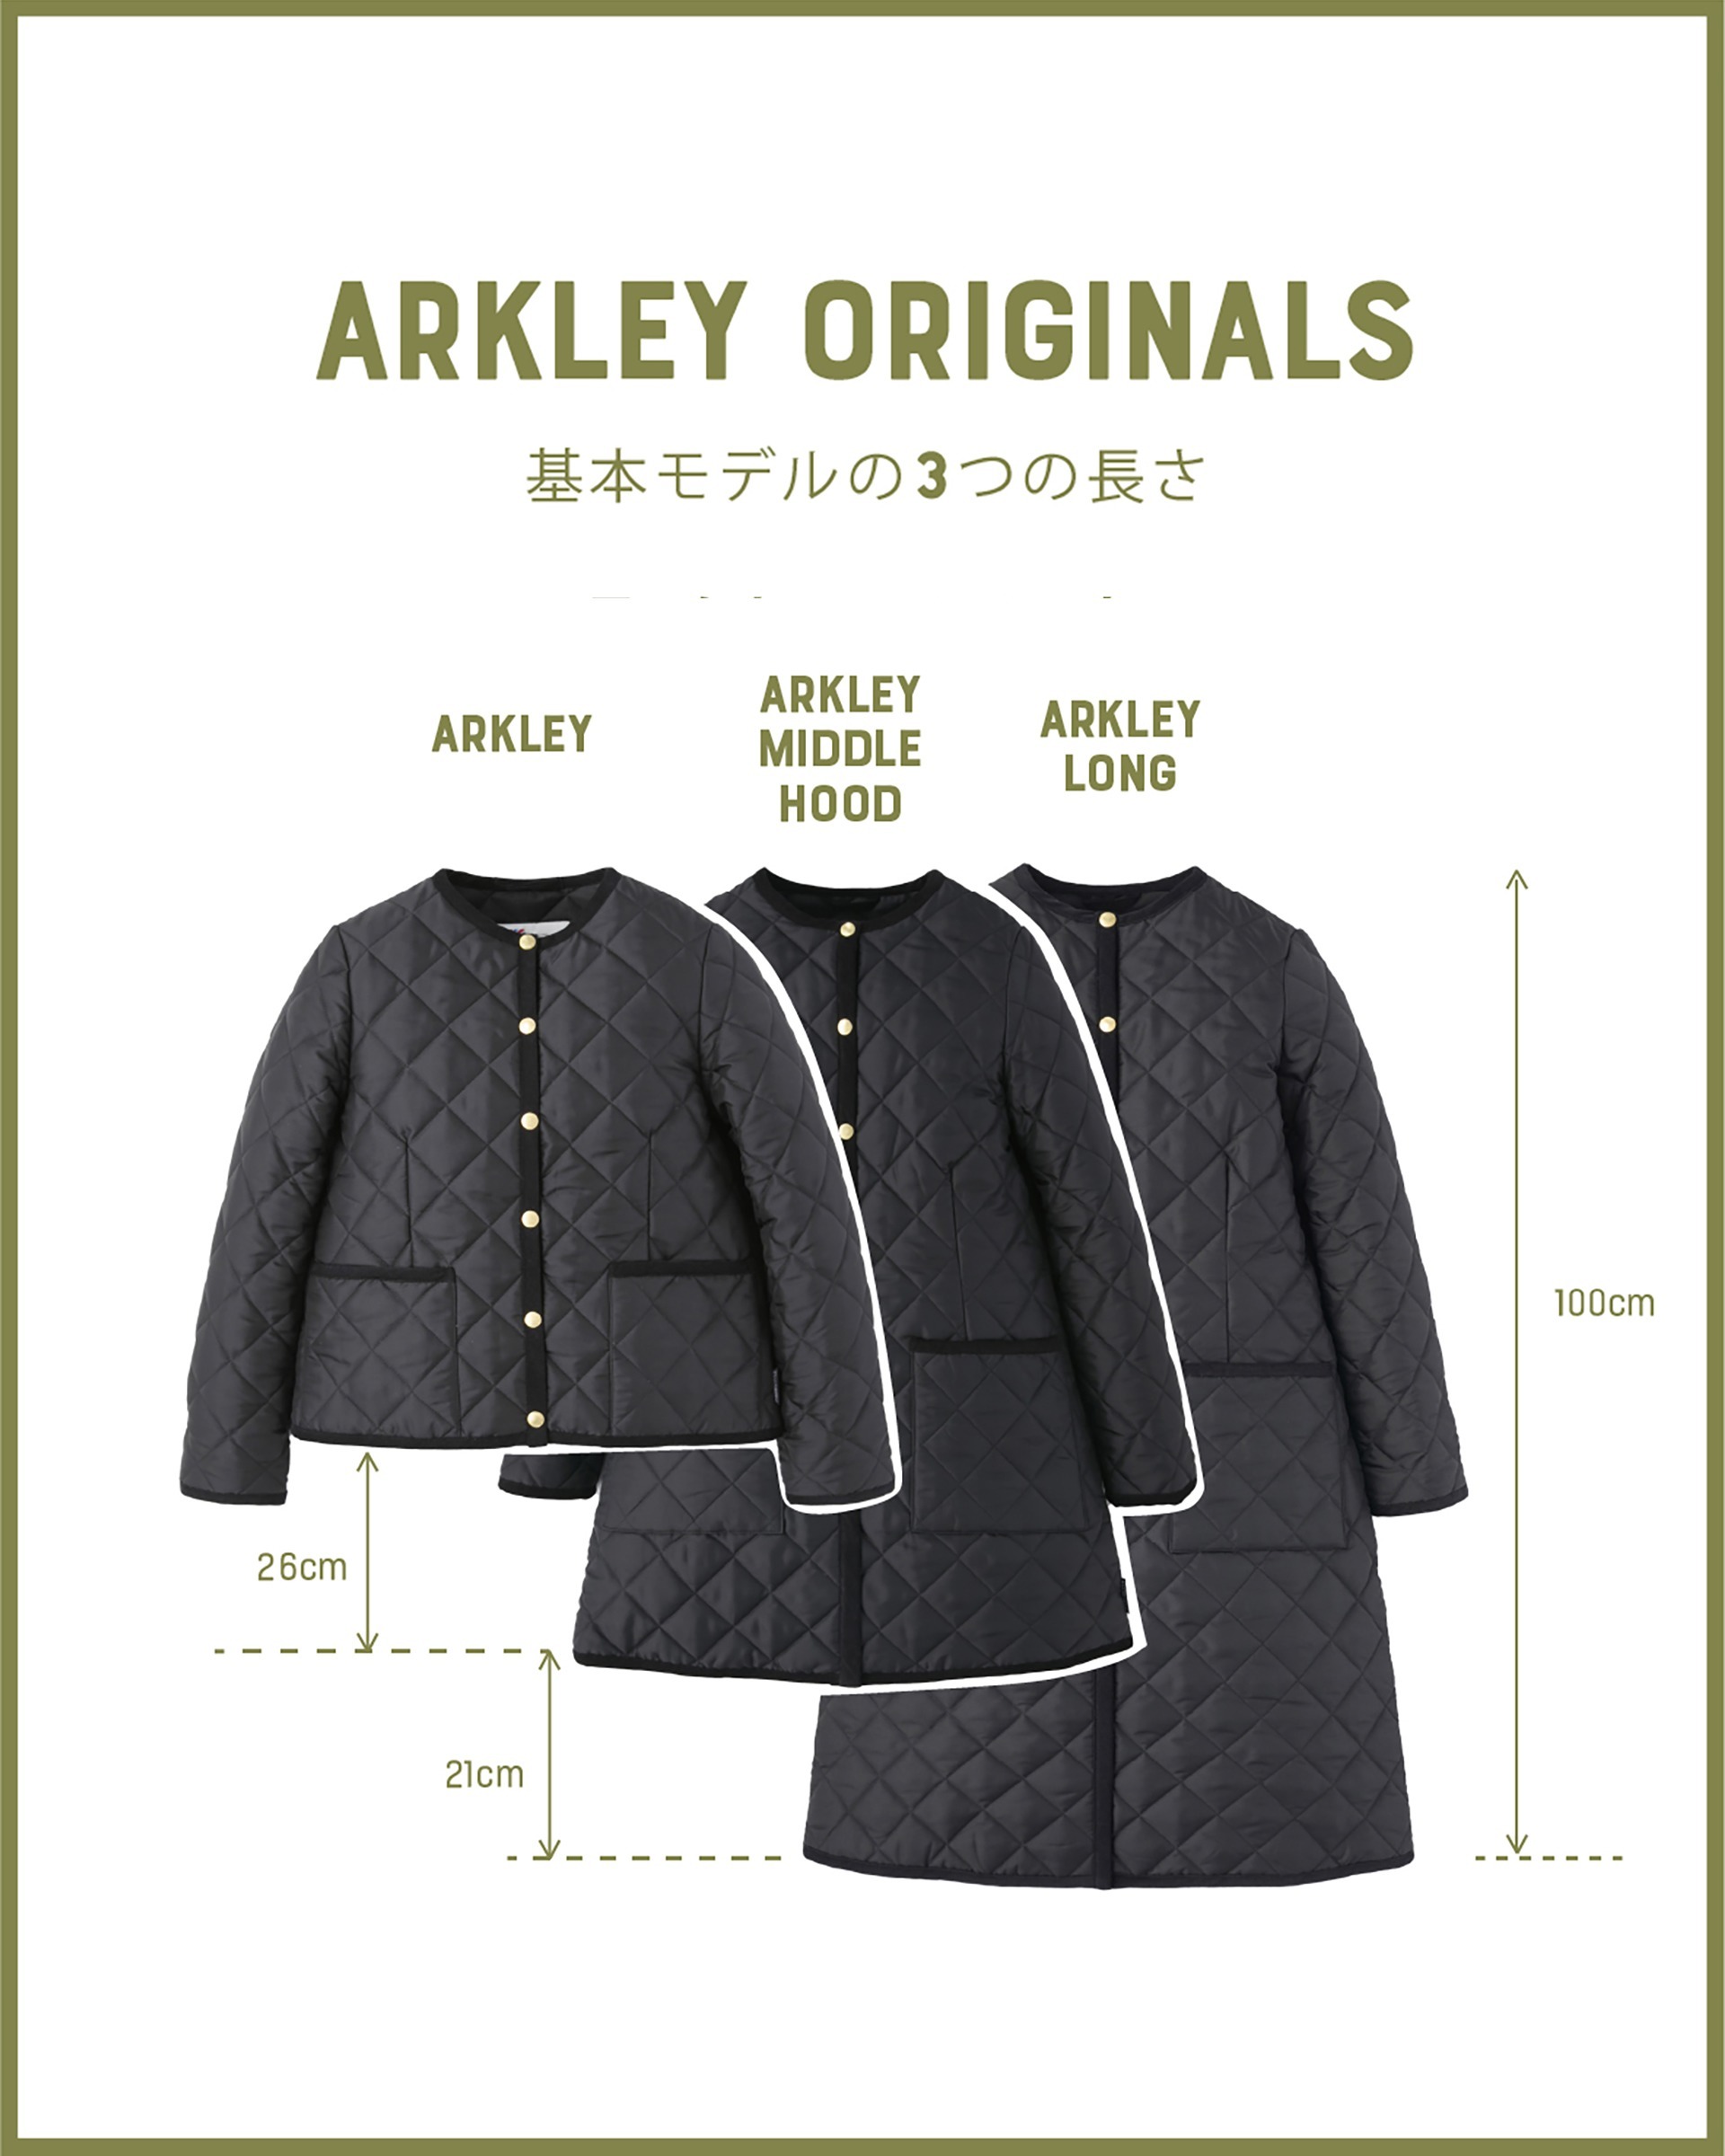 traditionalweatherwear ARKLEY